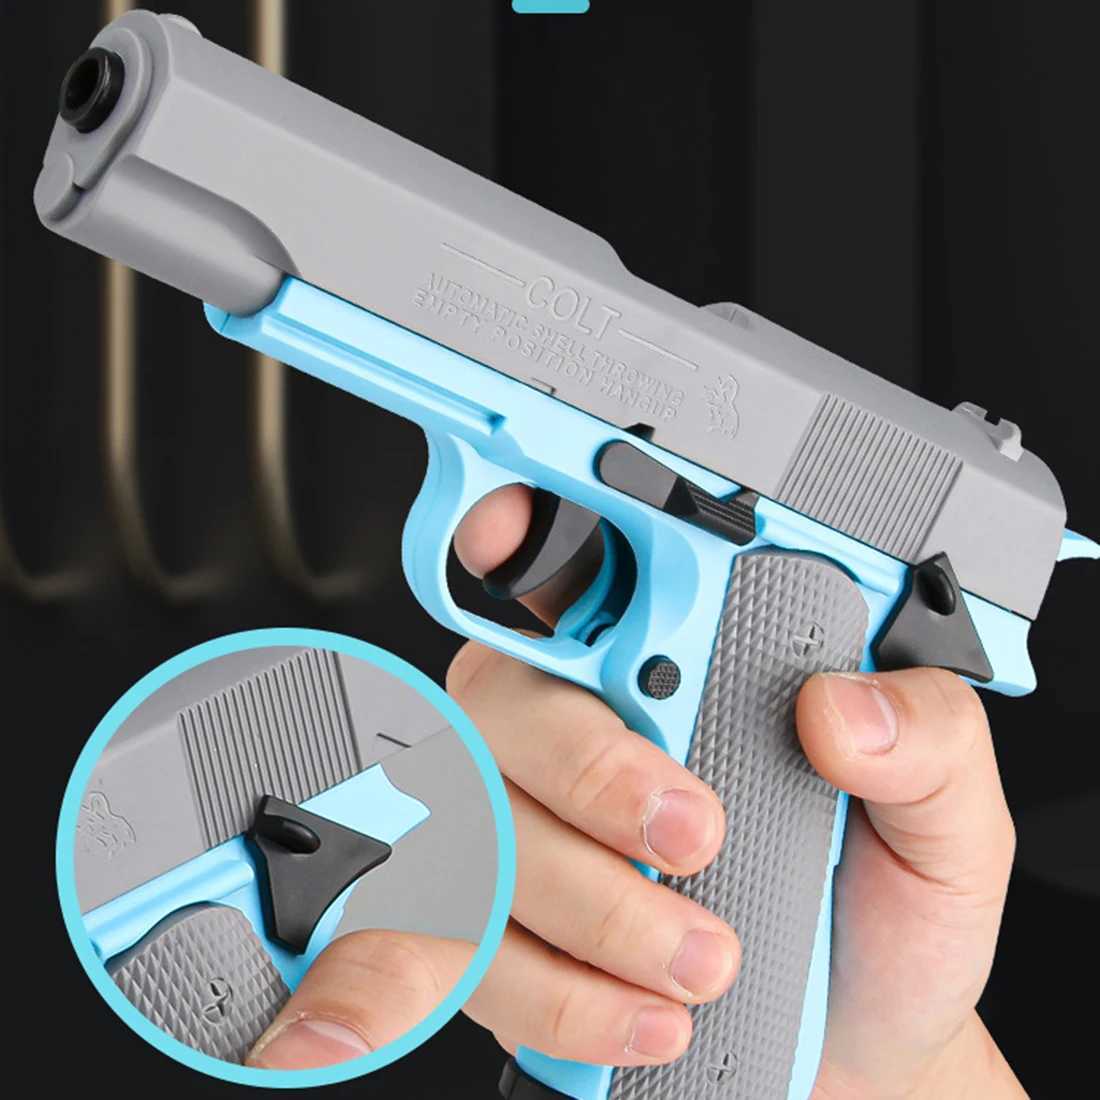 Zabawki z pistoletu Nowy mini model nadrukowany 3D grawitacyjny grawitacyjny skok zabawkowy pistolet bez ogrzewania cub dzieci stresy zabawka na Boże Narodzenie 2404